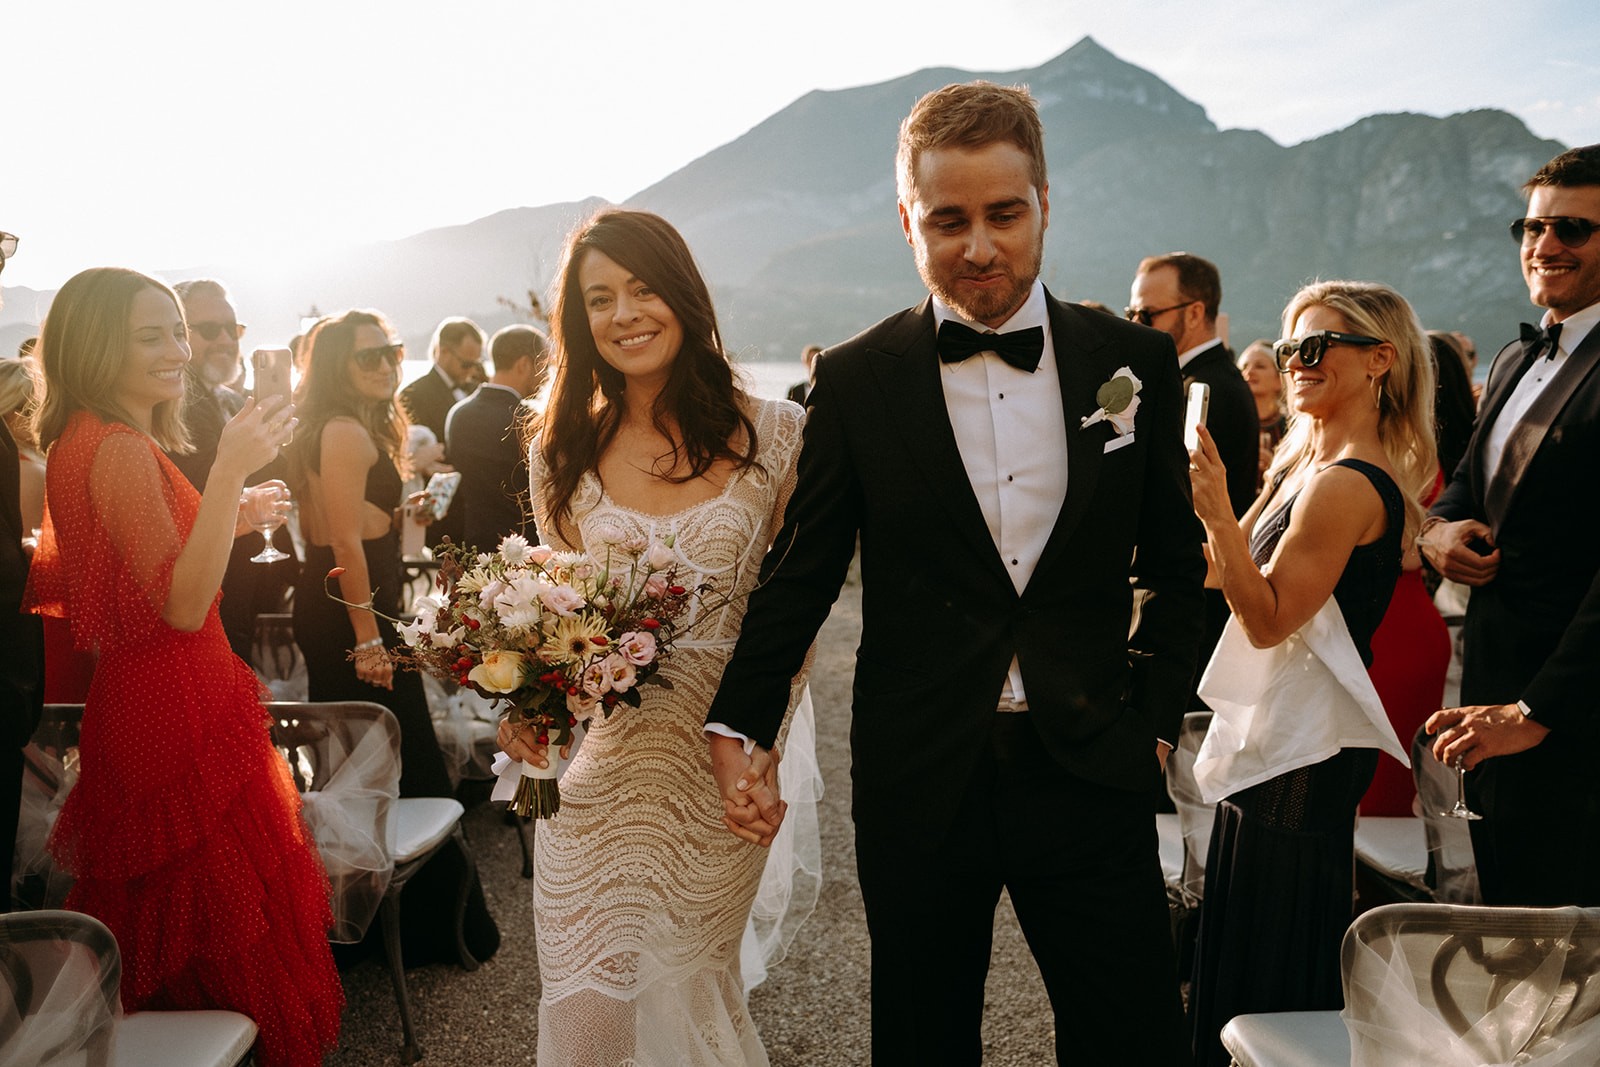 Wedding Ceremony in Como - Wedding in Como Lake, Villa Serbelloni